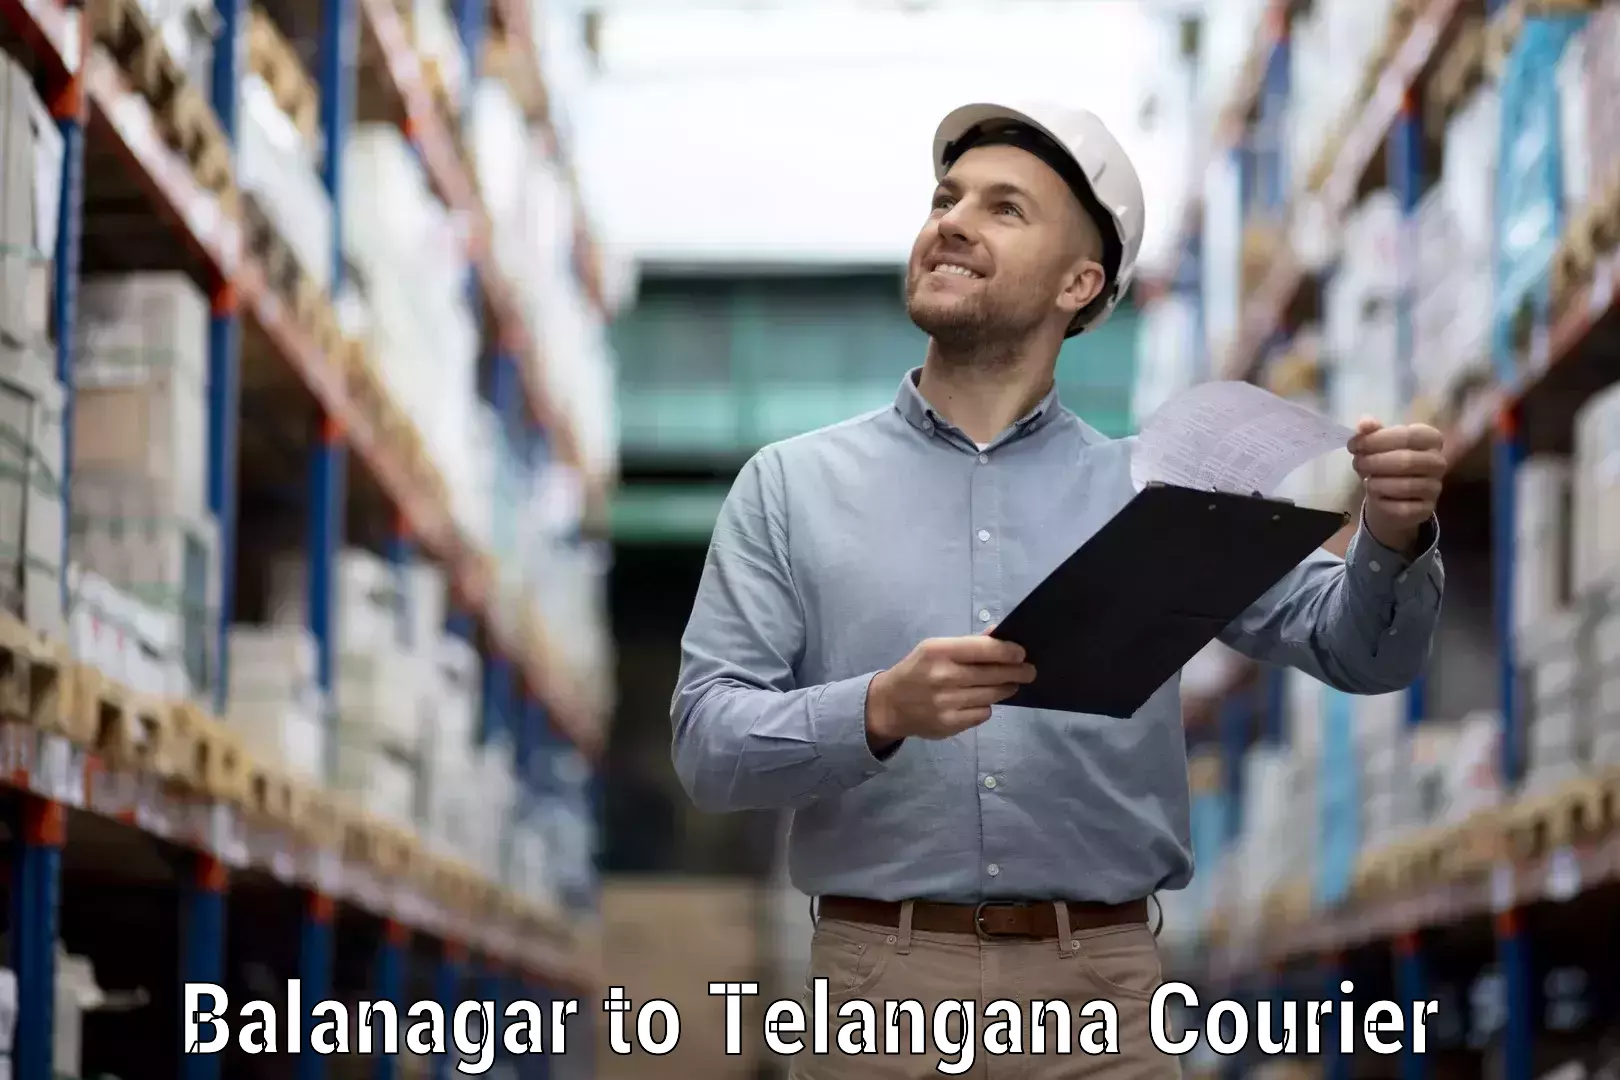 Customizable delivery plans Balanagar to Tallada